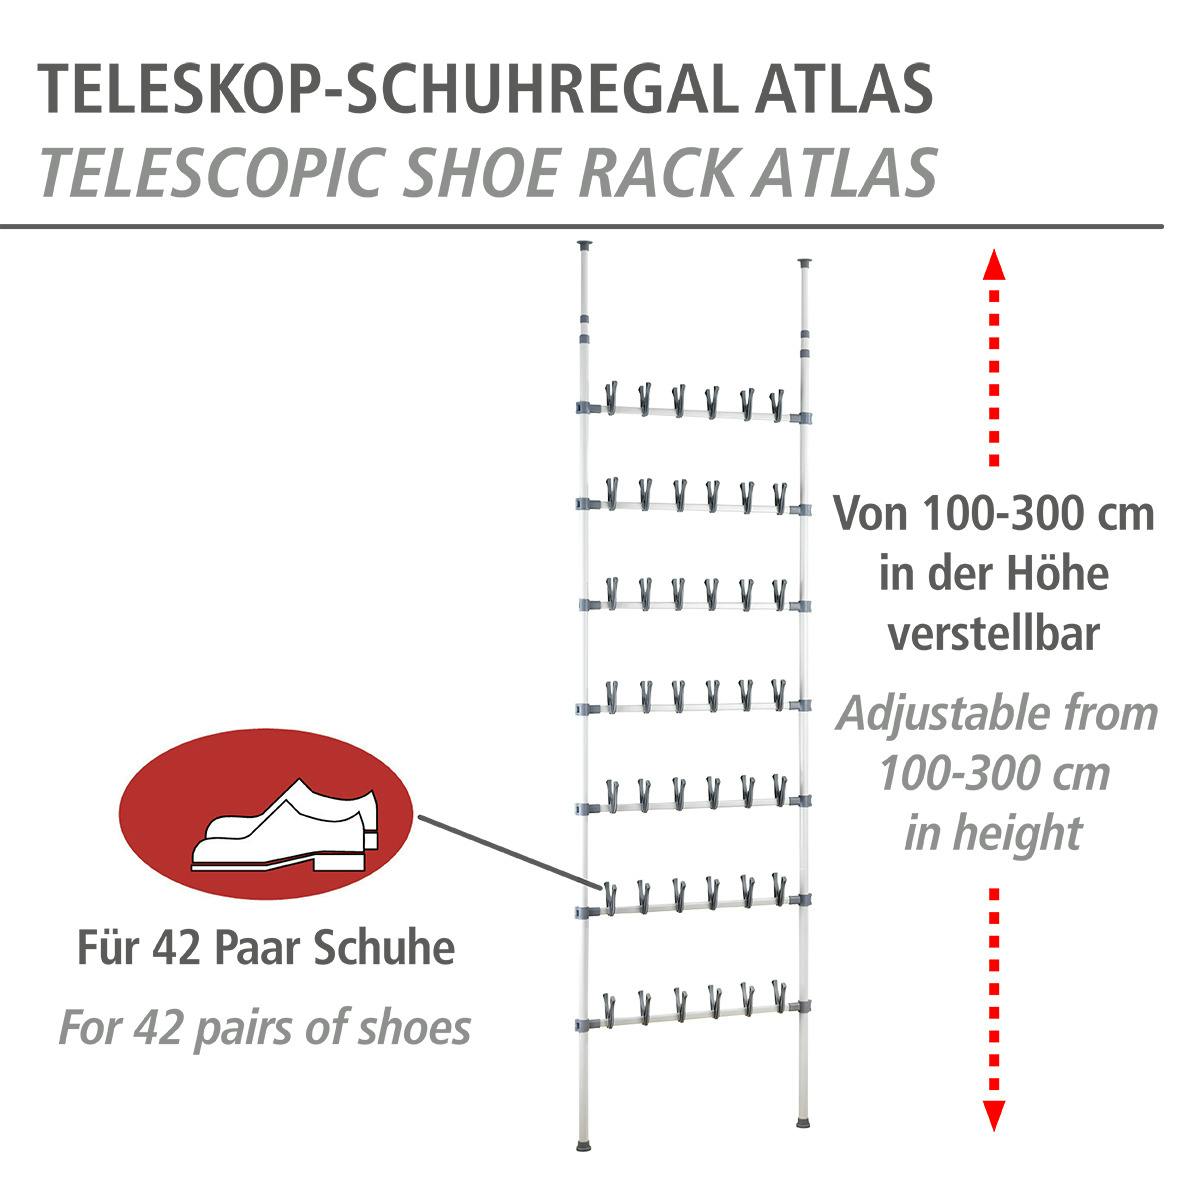 WENKO Teleskop Schuhregal Atlas | METRO Marktplatz